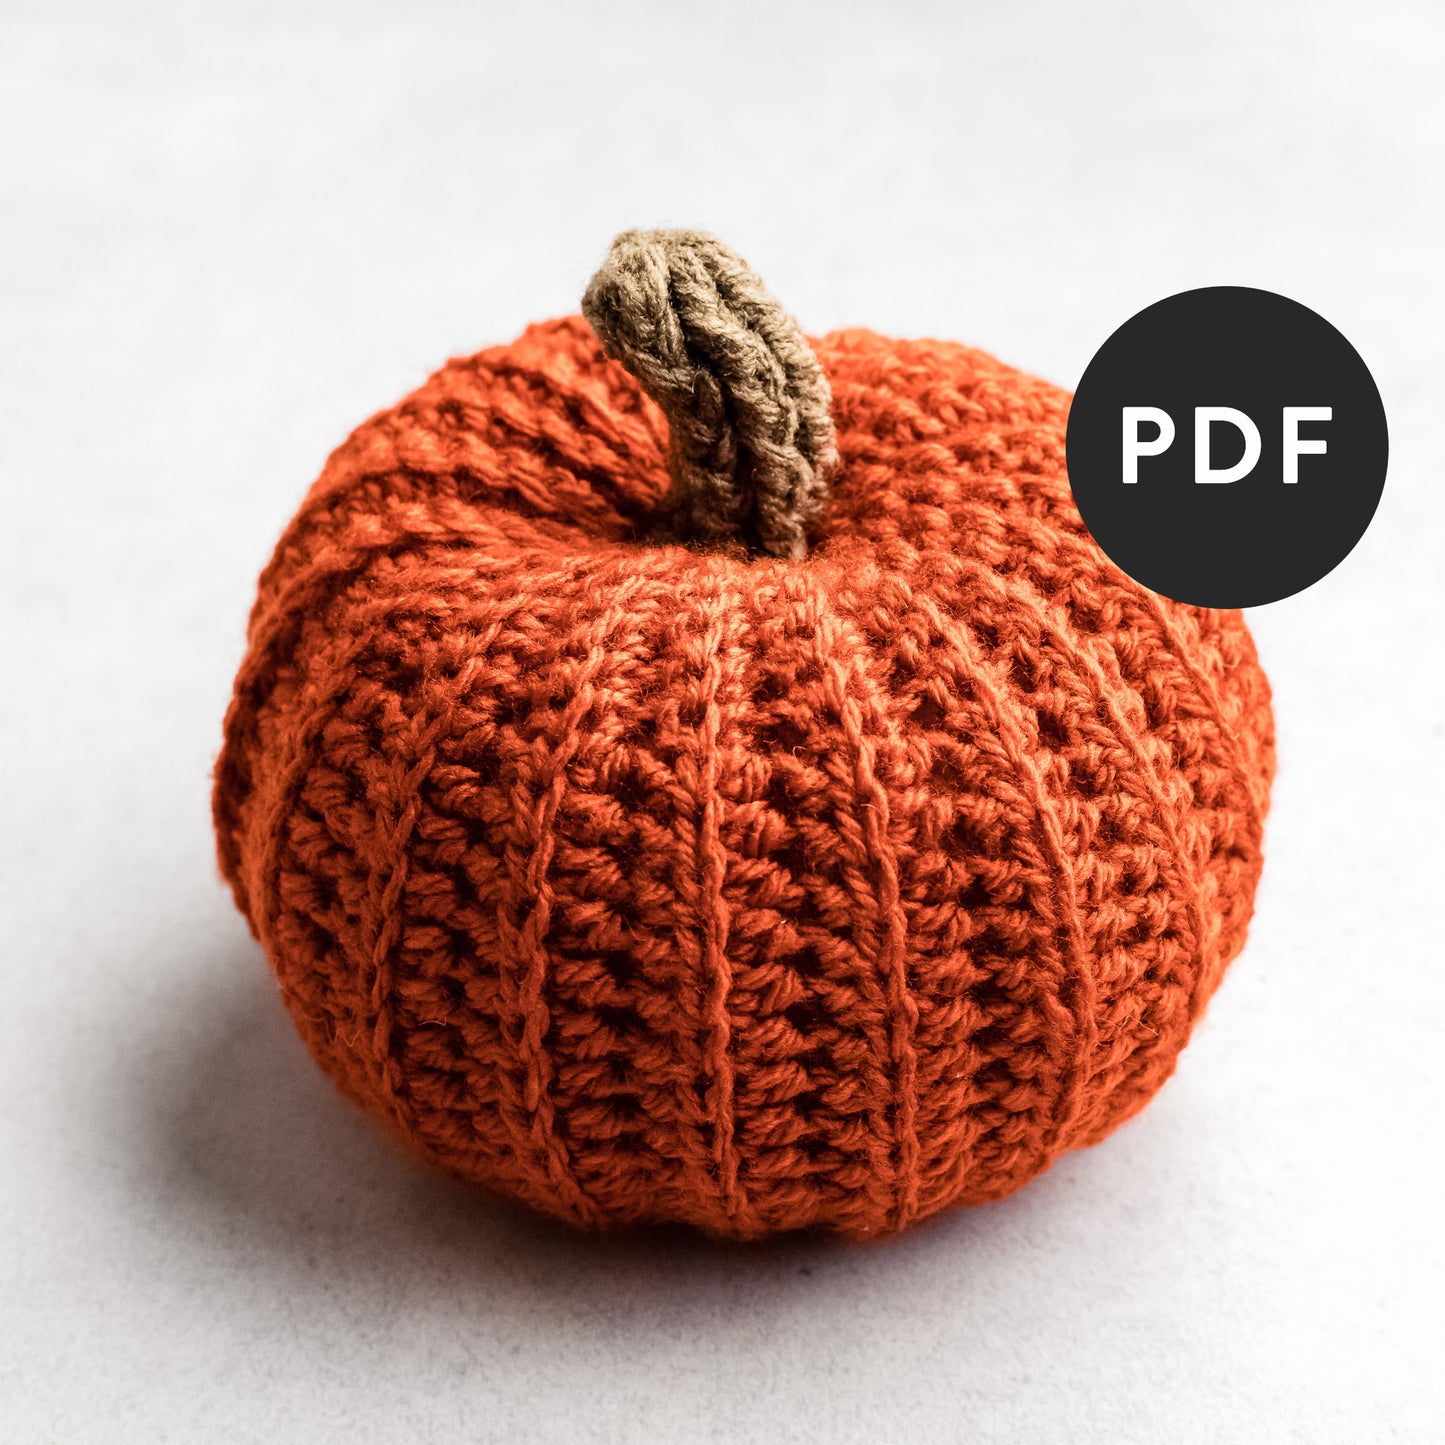 Rustic Style Farmhouse Pumpkin Crochet Pattern